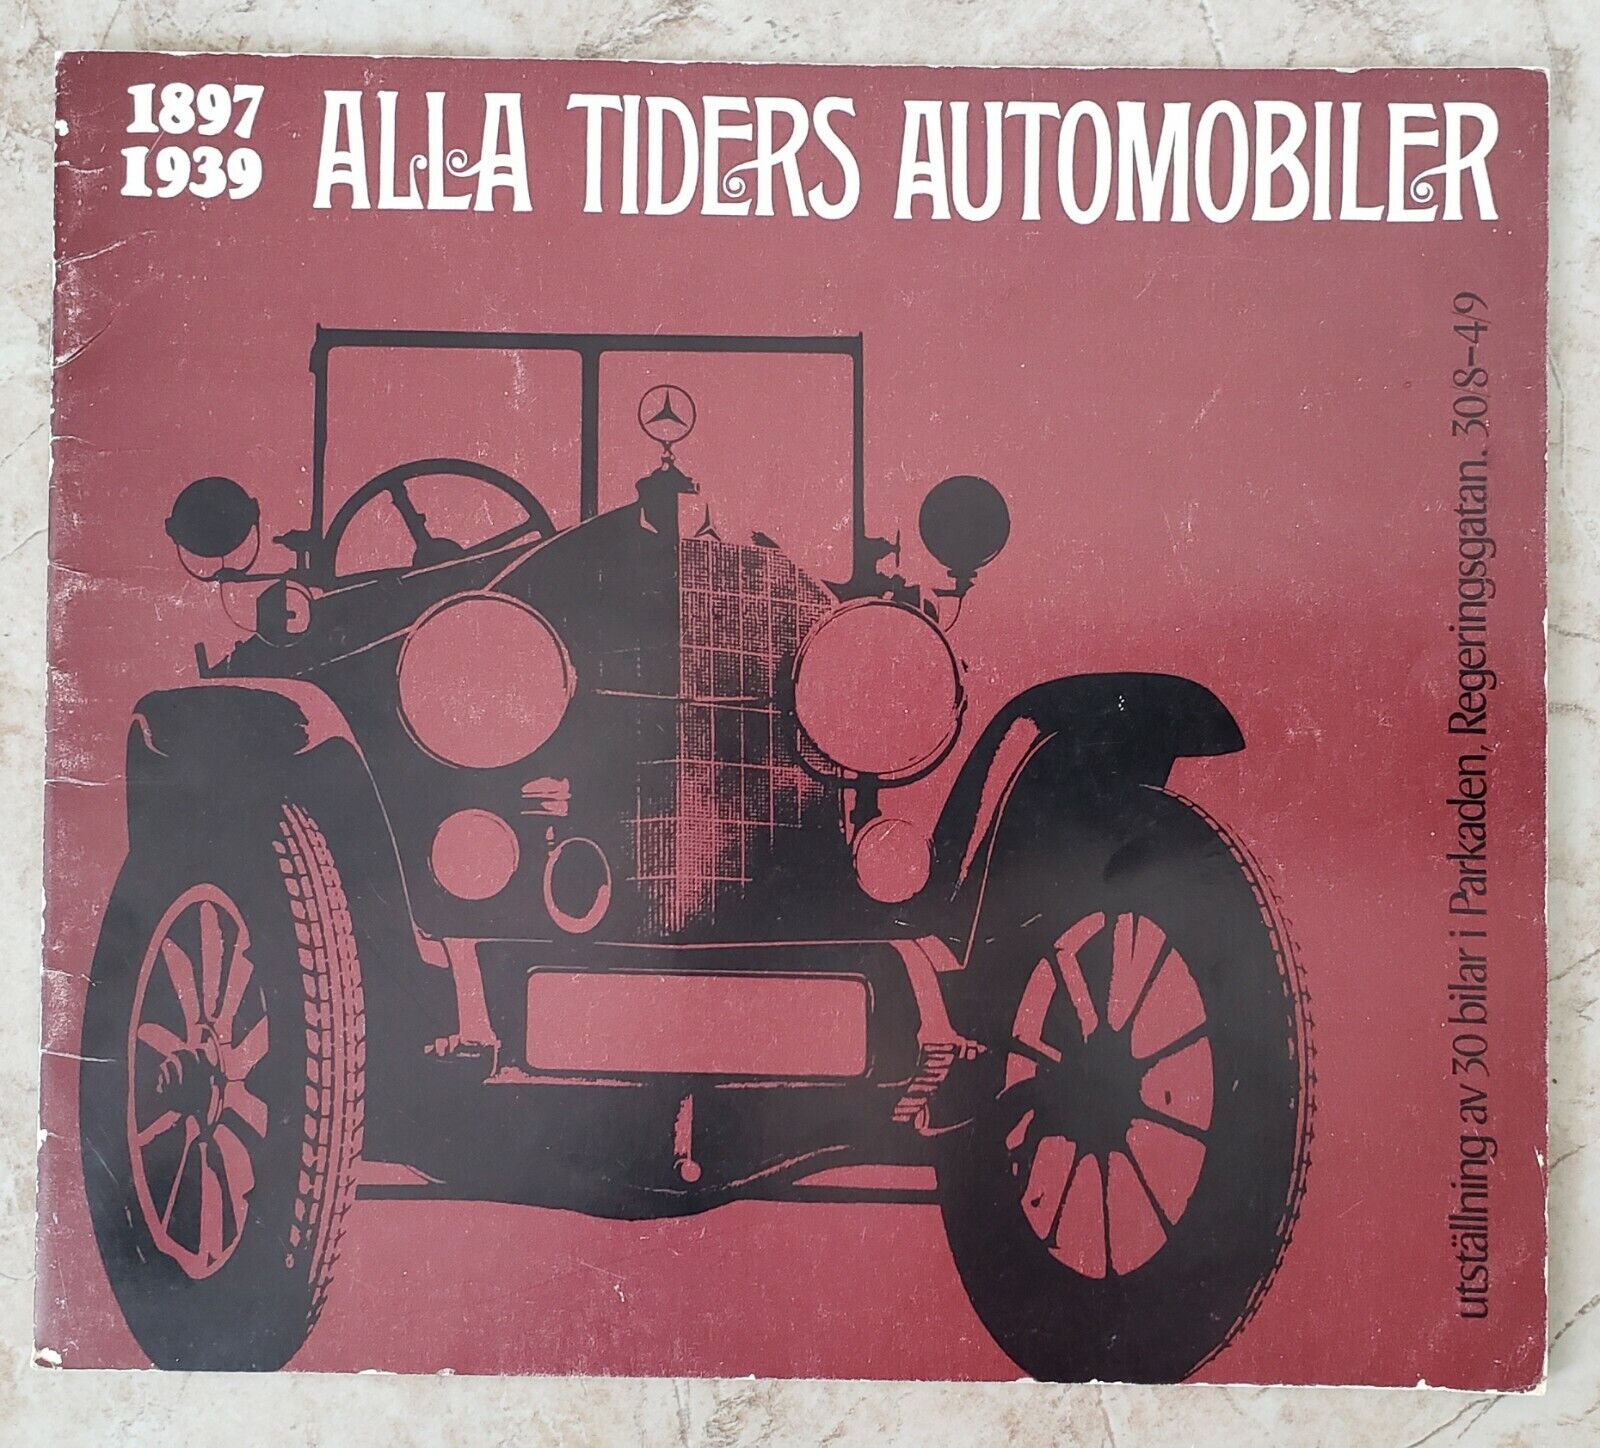 ALLA TIDERS AUTOMOBILER 1897-1939 Car Show 1964 Parkaden (Swedish Text)